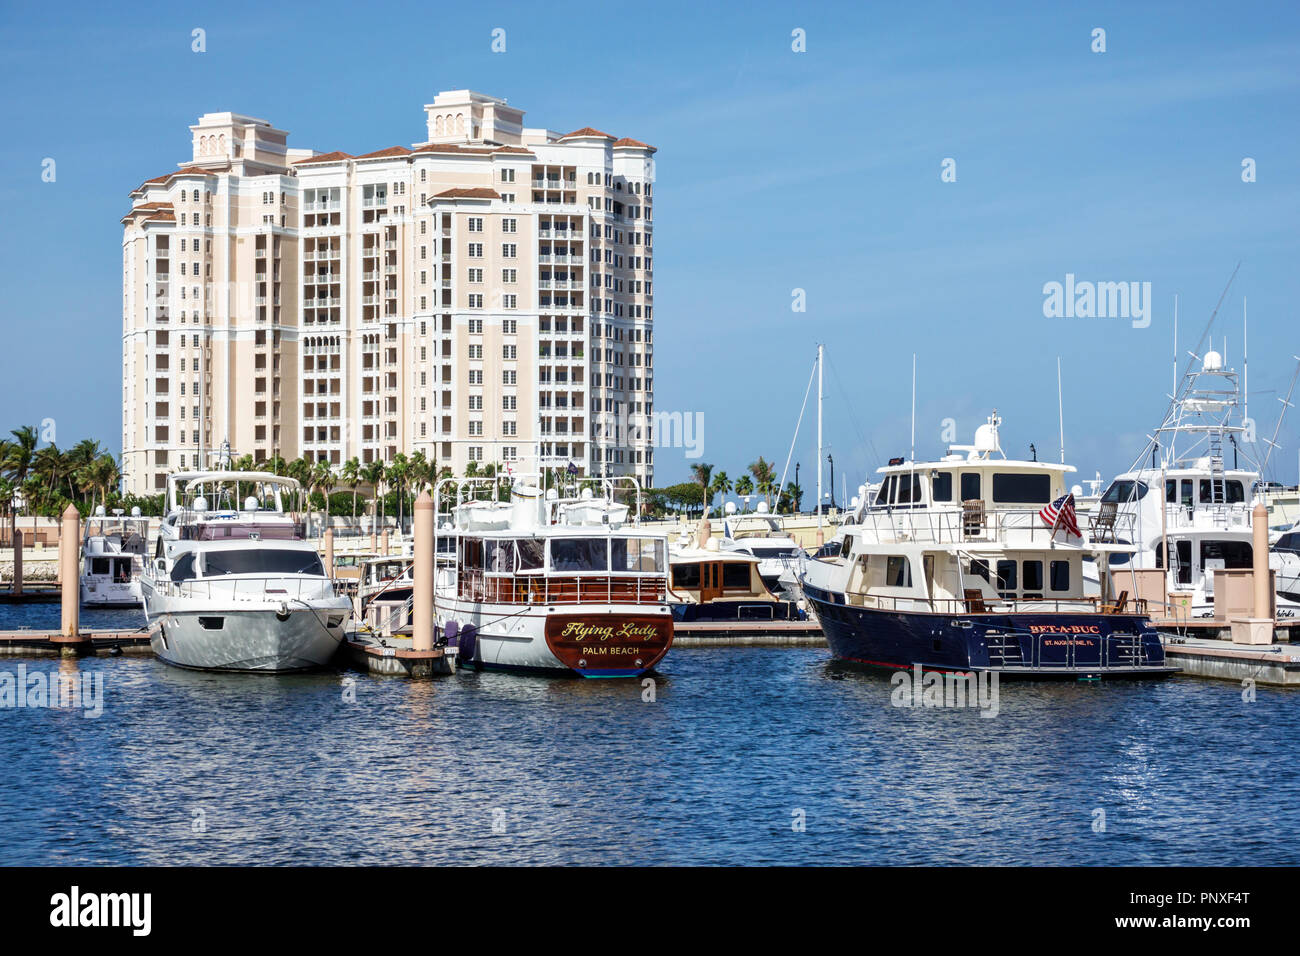 West Palm Beach Florida, Lake Worth Lagoon, Yachthafen, Hochhaus Wolkenkratzer Gebäude Gebäude Eigentumswohnung Wohnapartments Hous Stockfoto